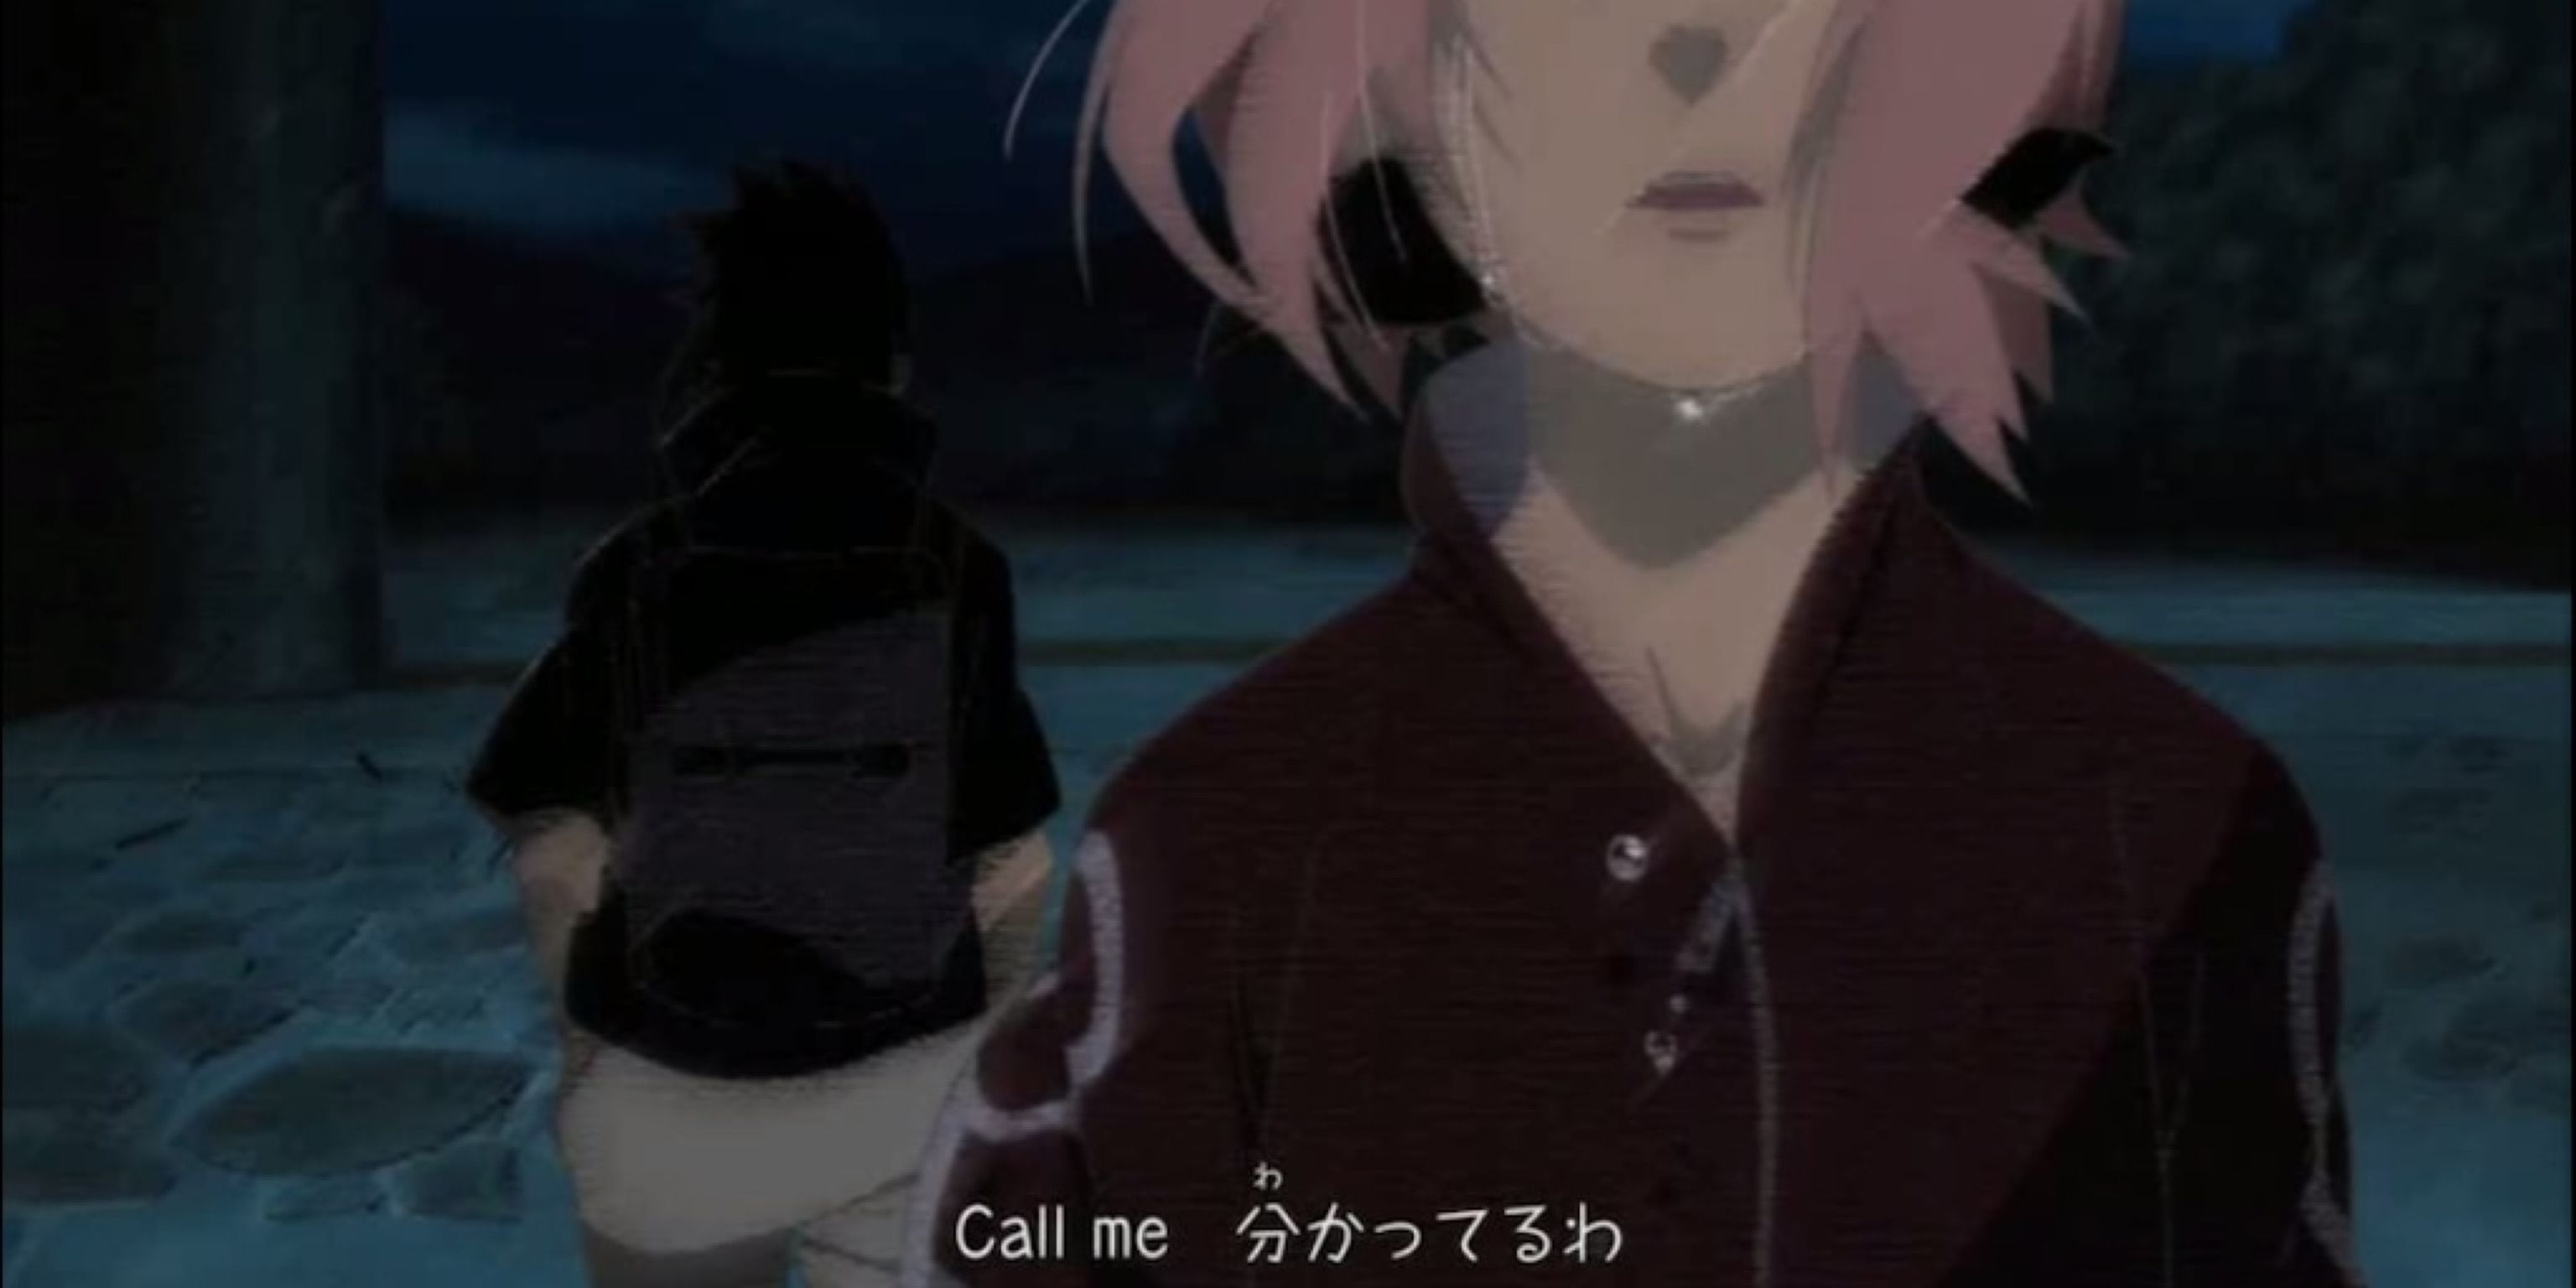 Sakura is distraught as Sasuke departs the village in Naruto.